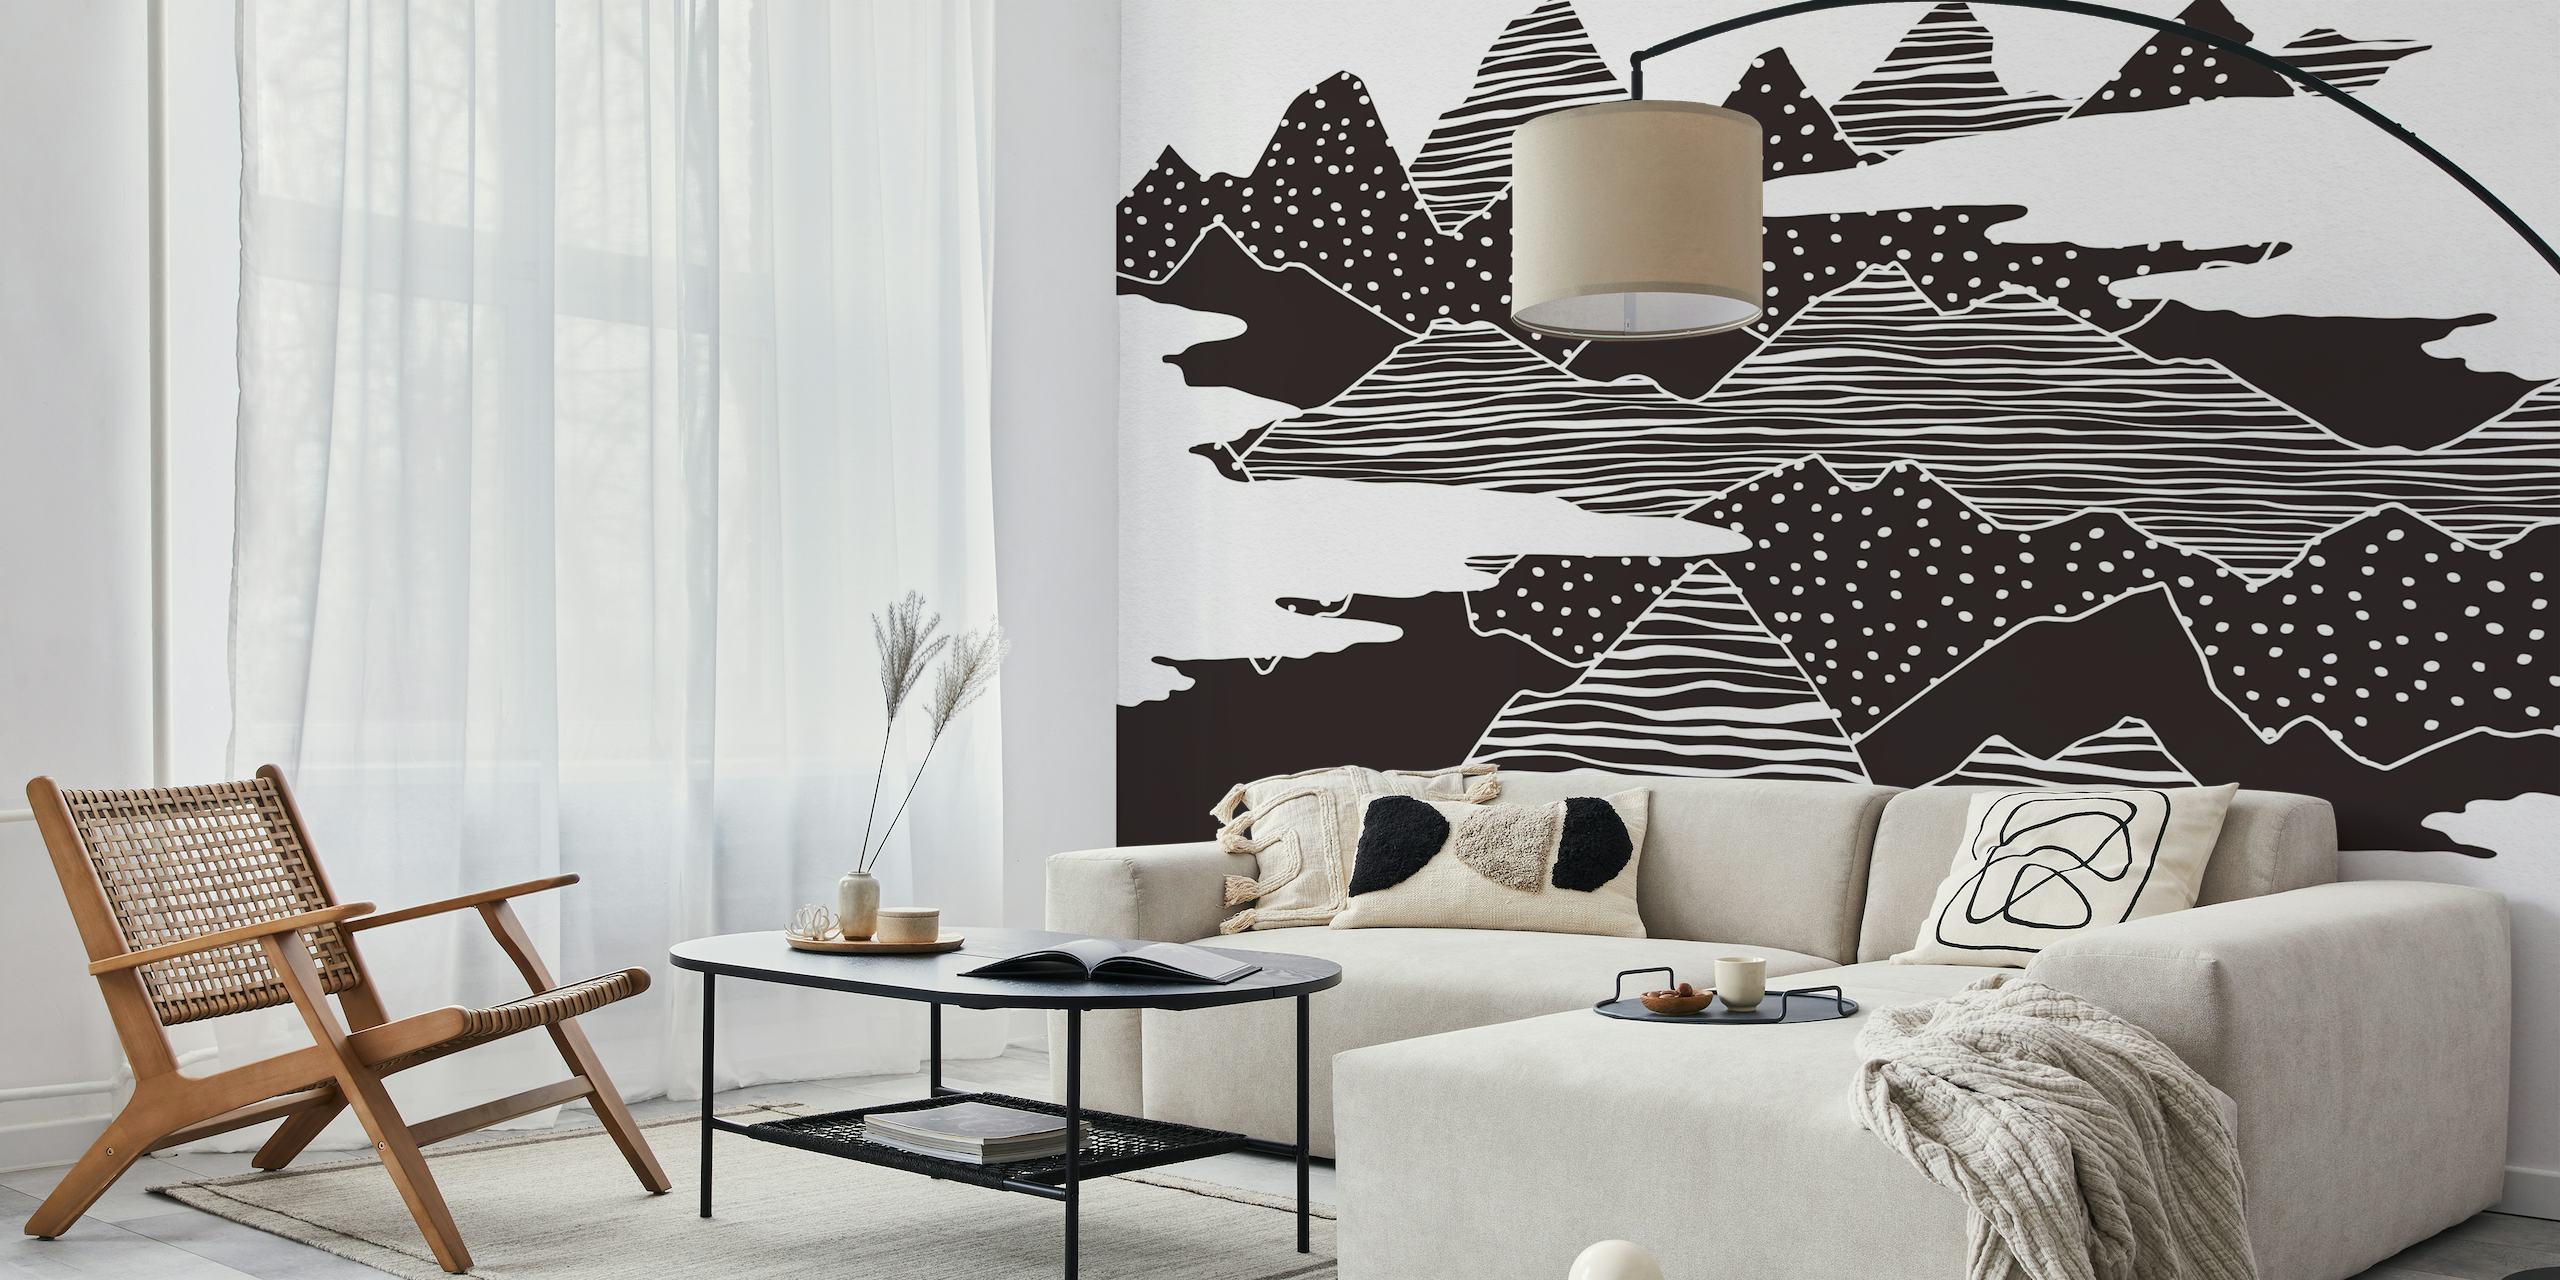 Abstract zwart-wit muurschildering van gestileerde bergtoppen met gestippelde texturen